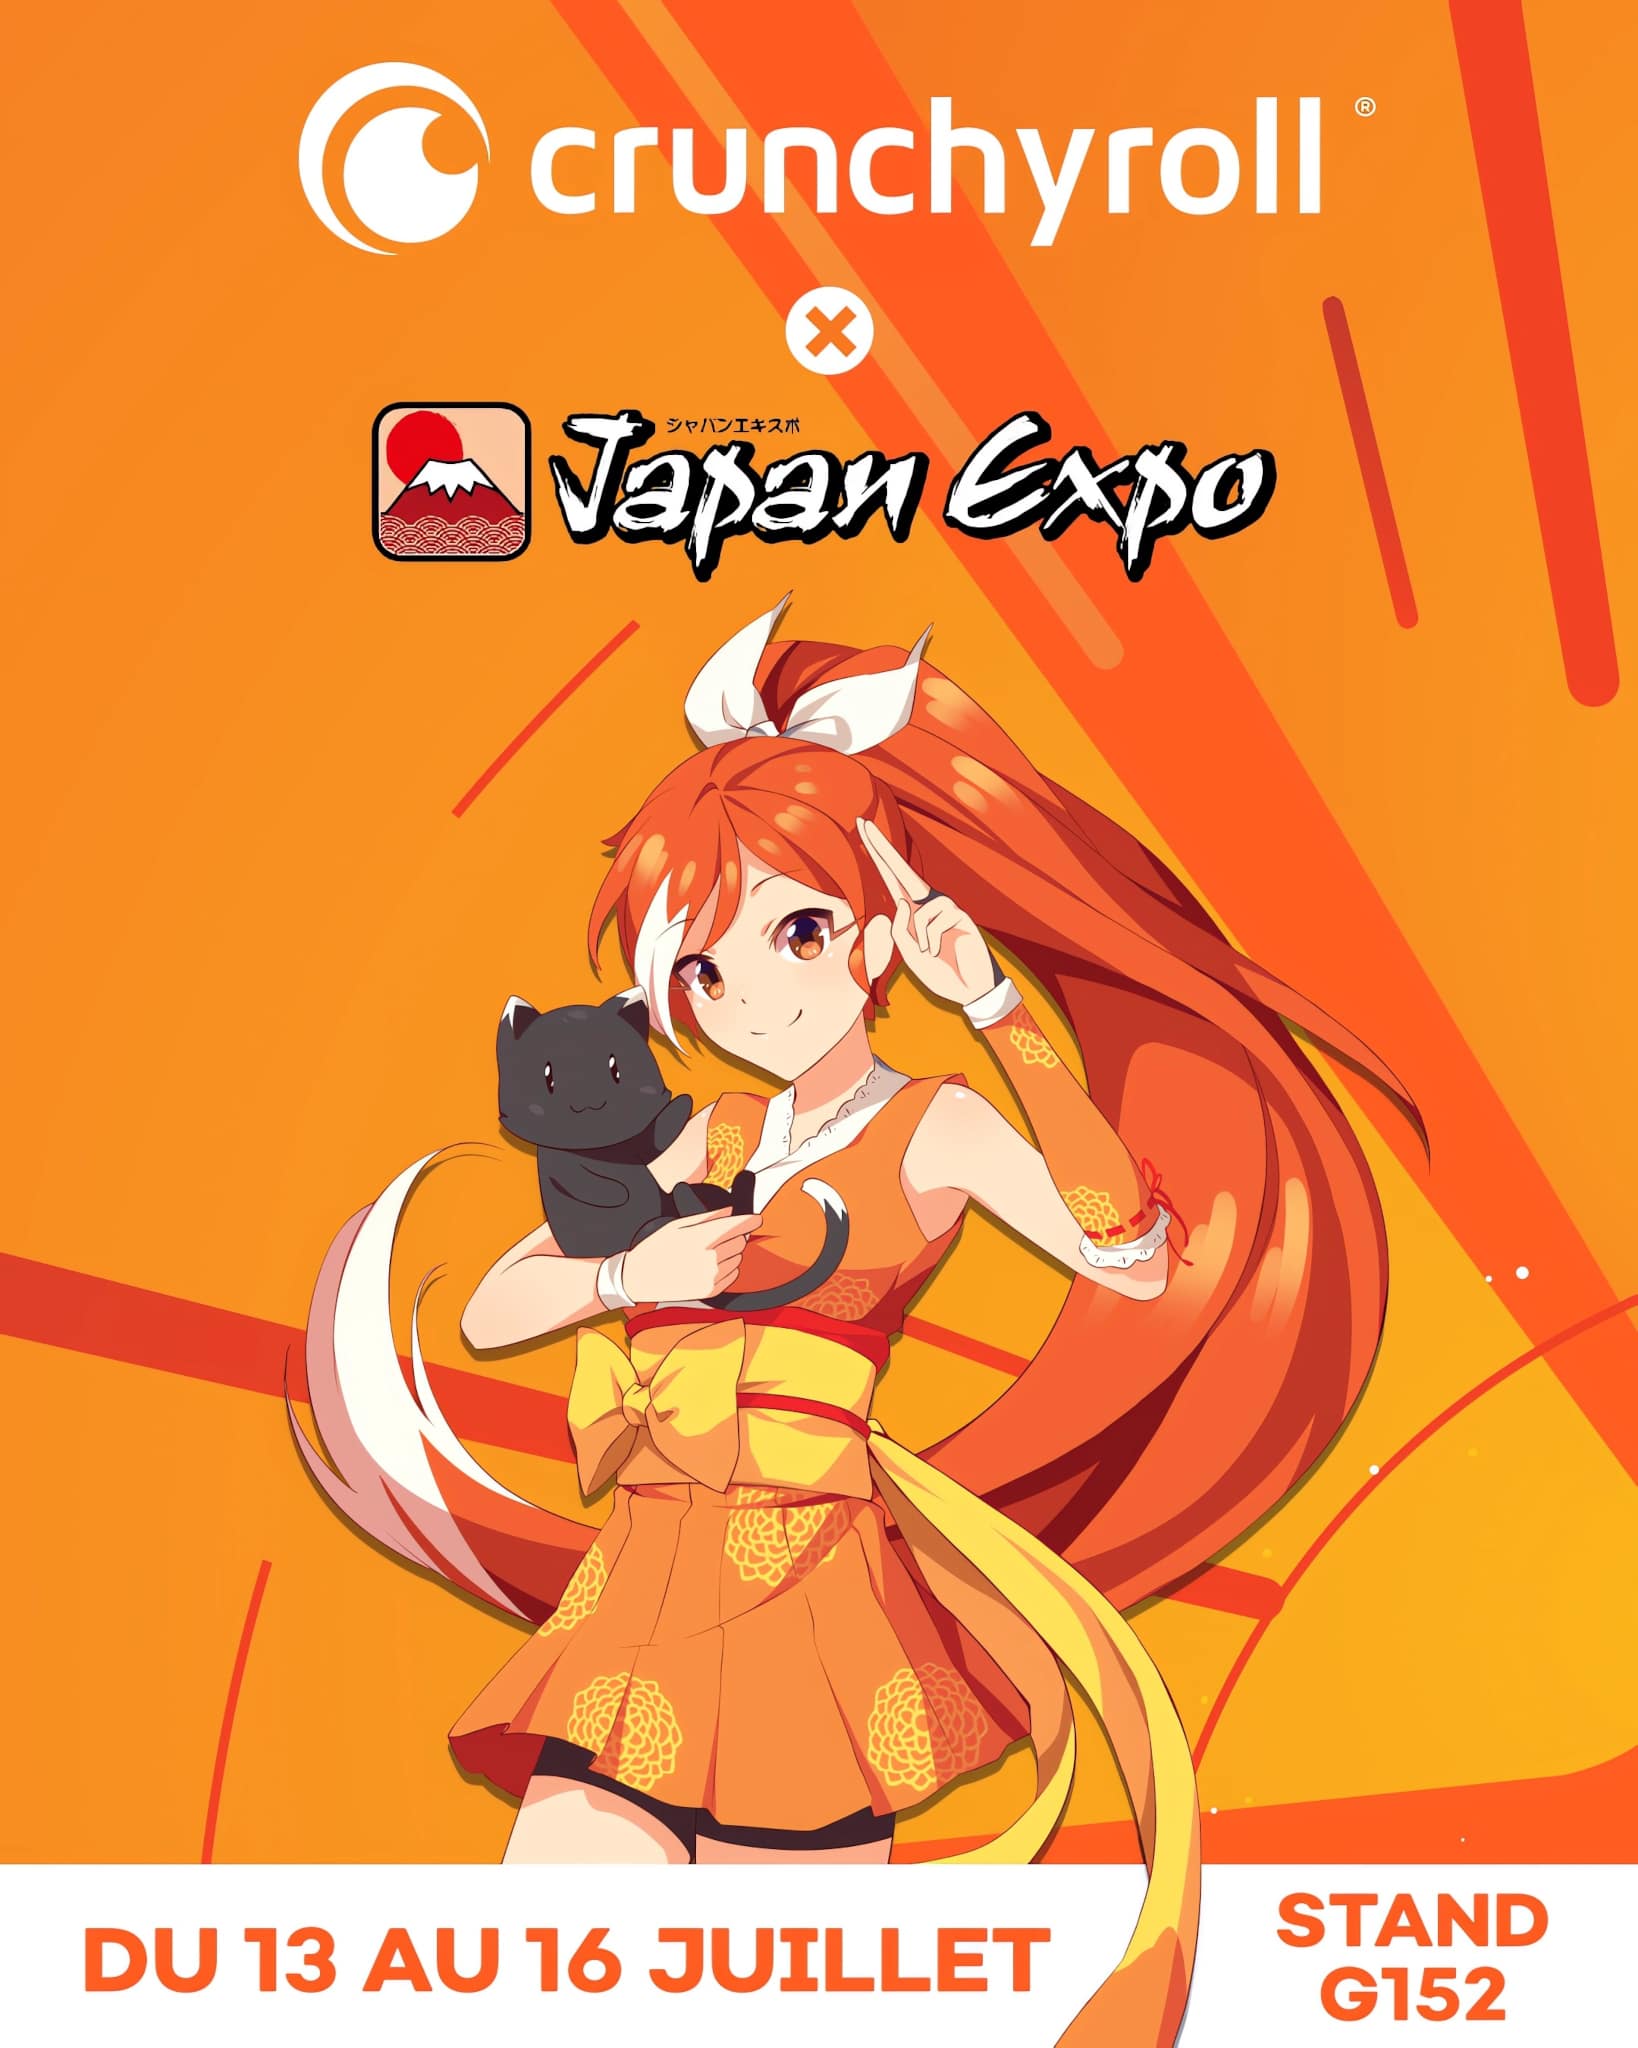 Annonce de la présence de Crunchyroll lors de la Japan Expo 2023